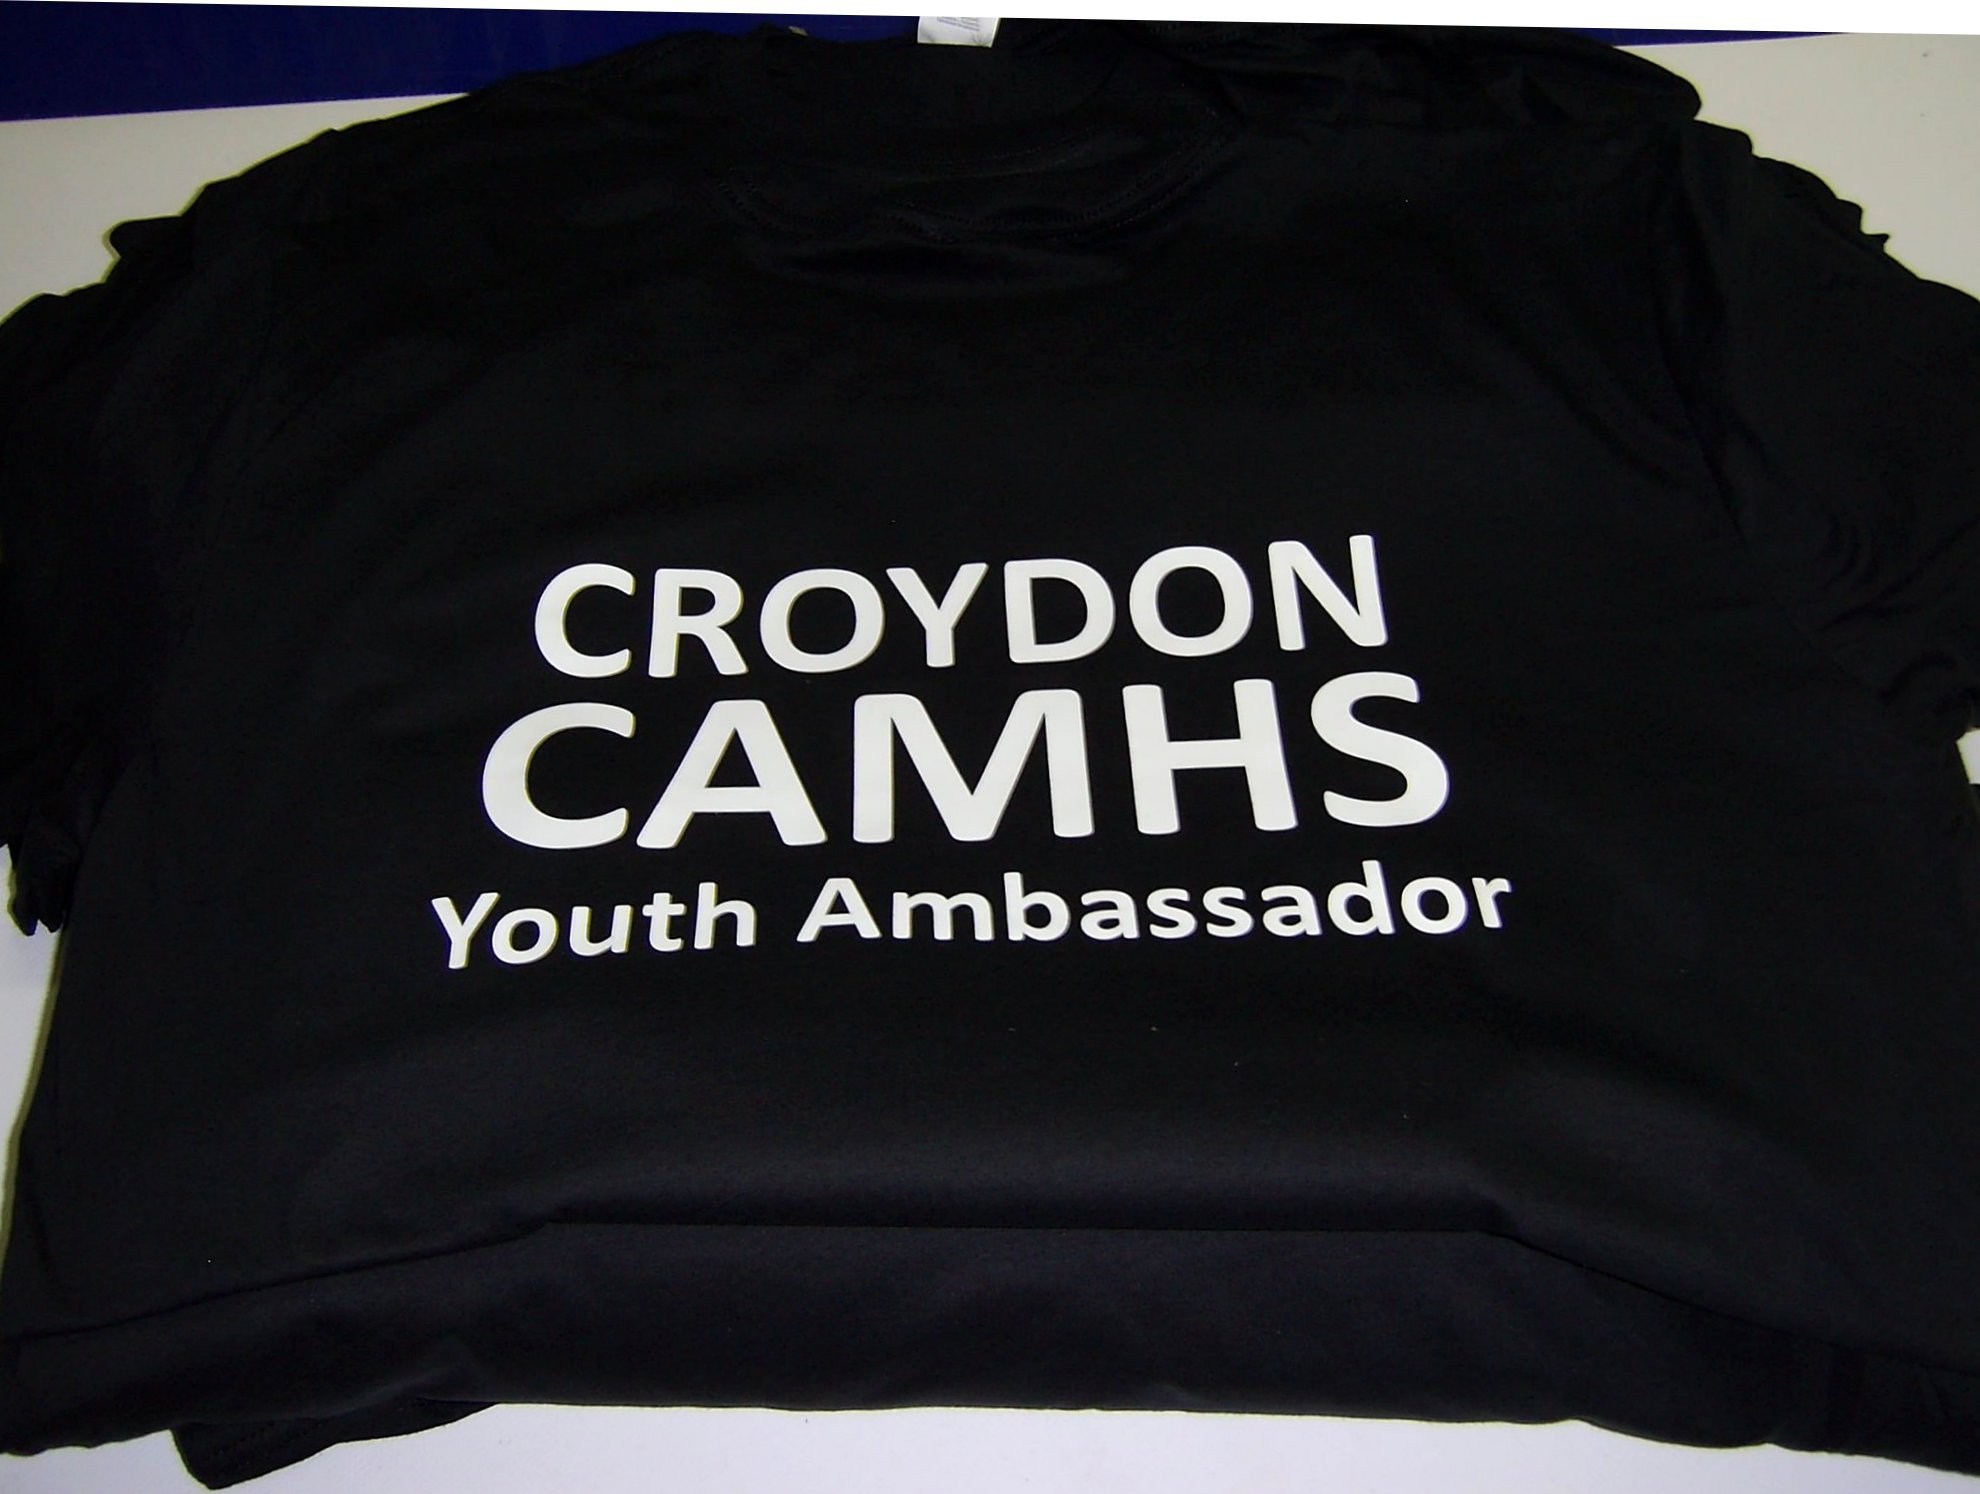 T-Shirt Printing Croydon